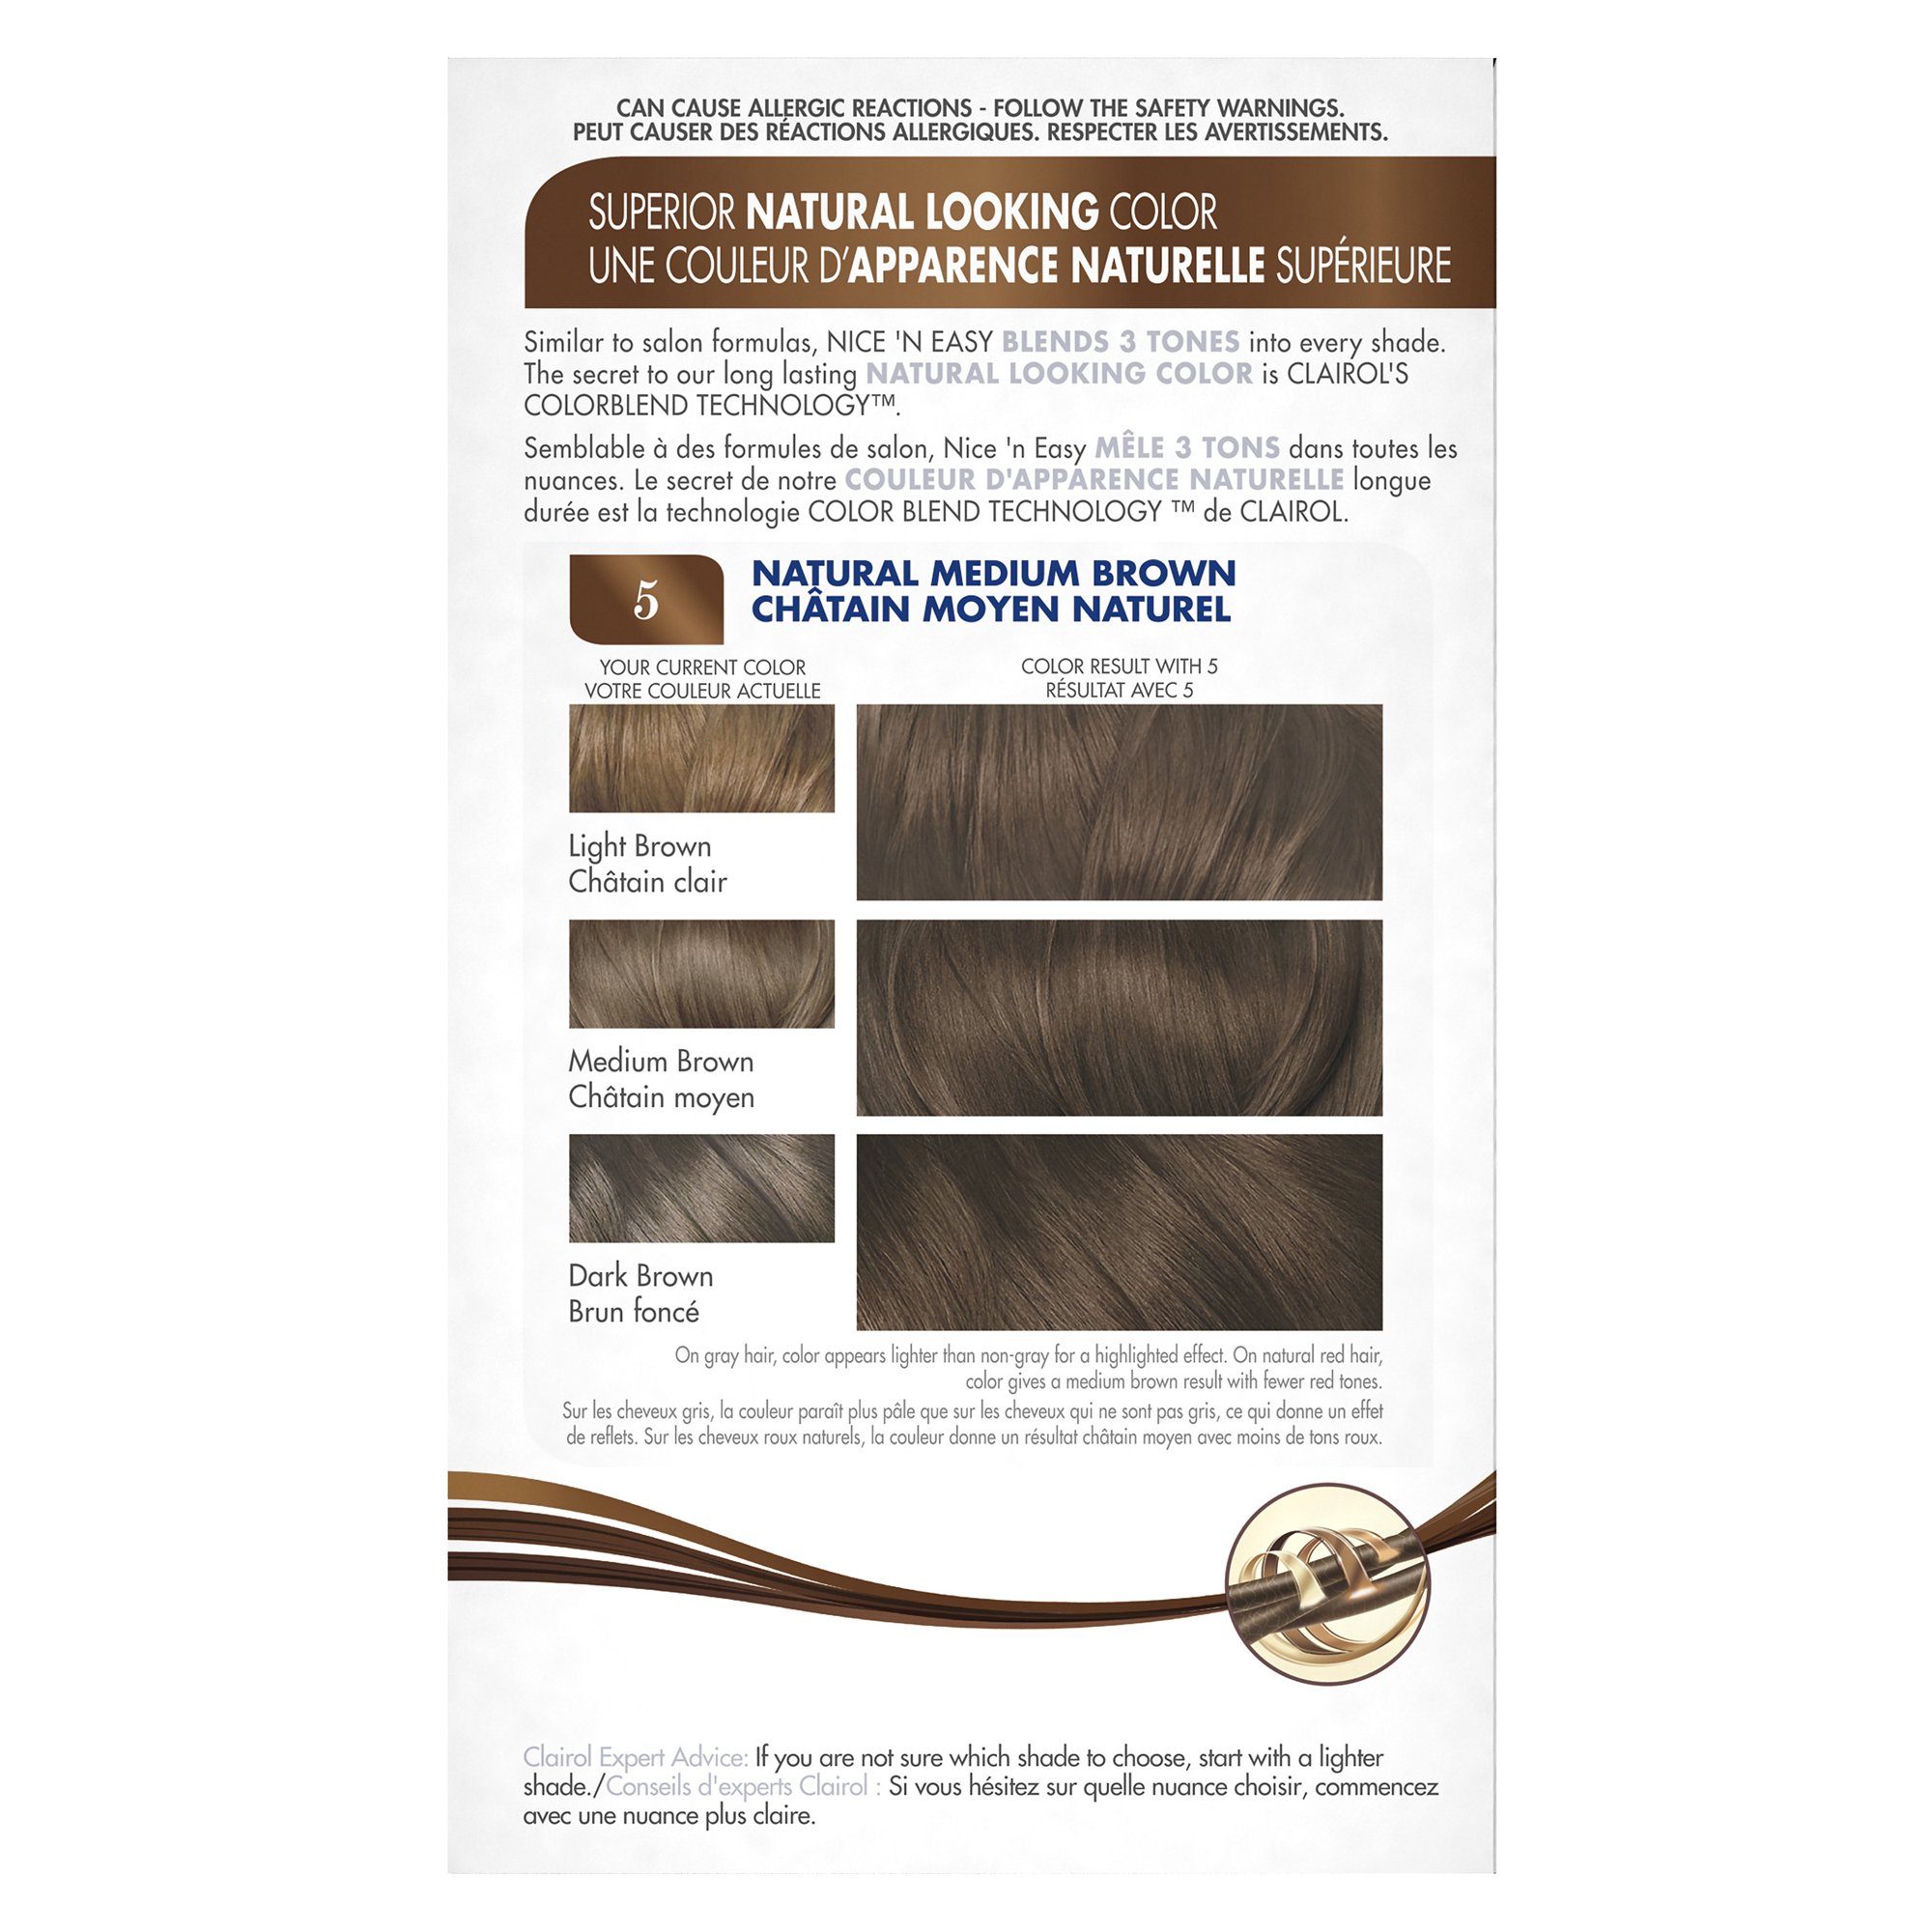 Clairol Nice'n Easy Liquid Permanent Hair Dye, 5 Medium Brown Hair Color, Pack of 3